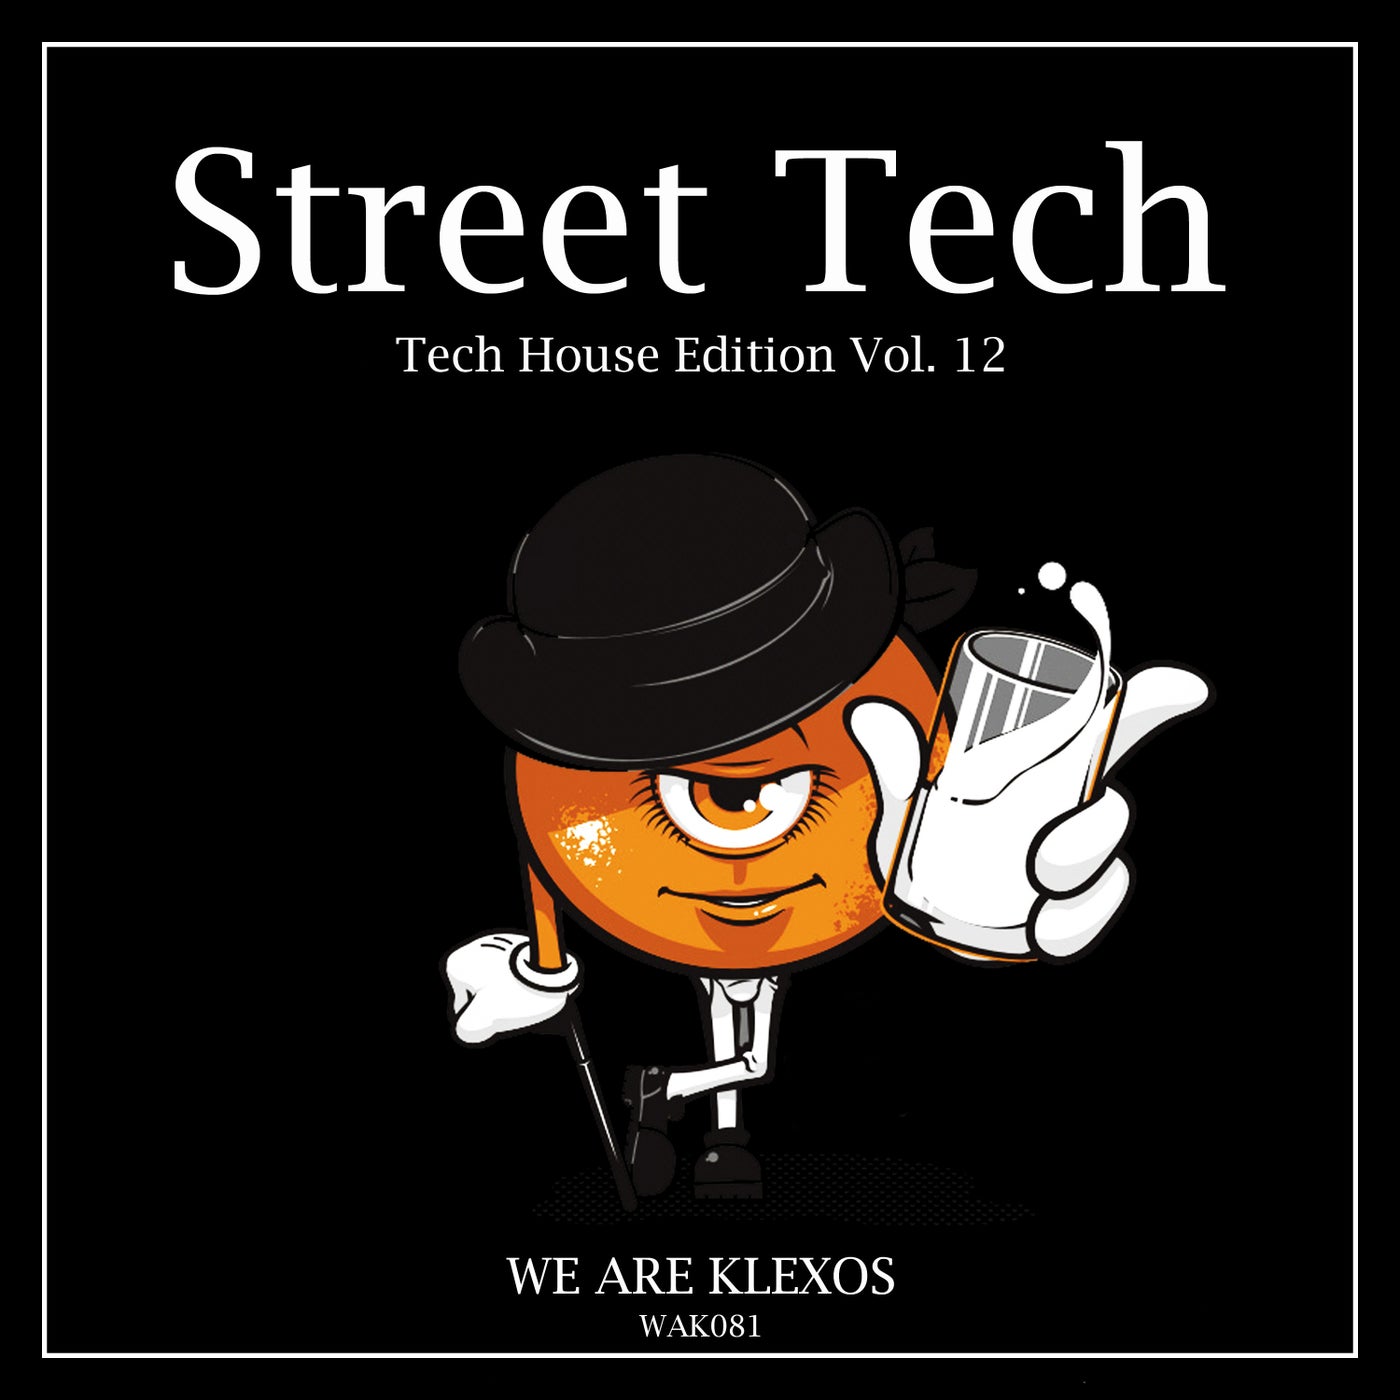 Street Tech, Vol. 12